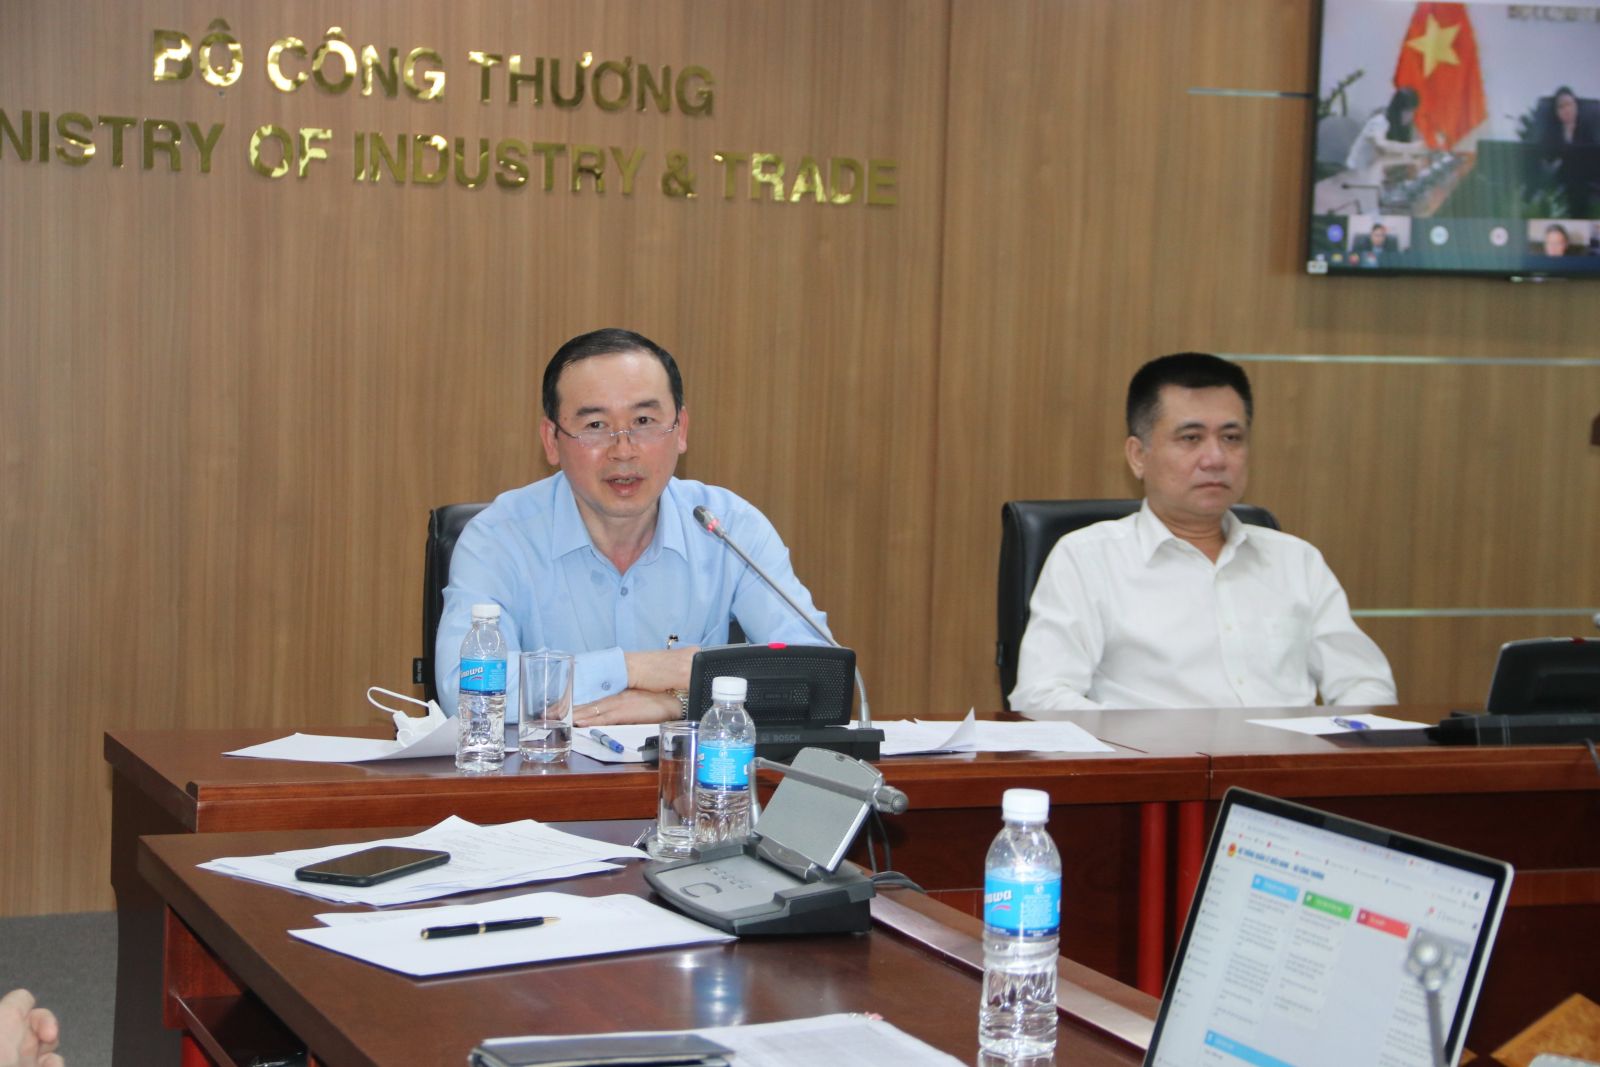 Cục trưởng Cục XNK Phan Văn Chinh cho biết, giai đoạn tiếp theo doanh nghiệp phải làm đủ thủ tục giấy tờ để hoàn thiện hồ sơ kiện. Chúng ta phải chứng minh được có dấu hiệu lừa đảo để Bộ Công an điều tra